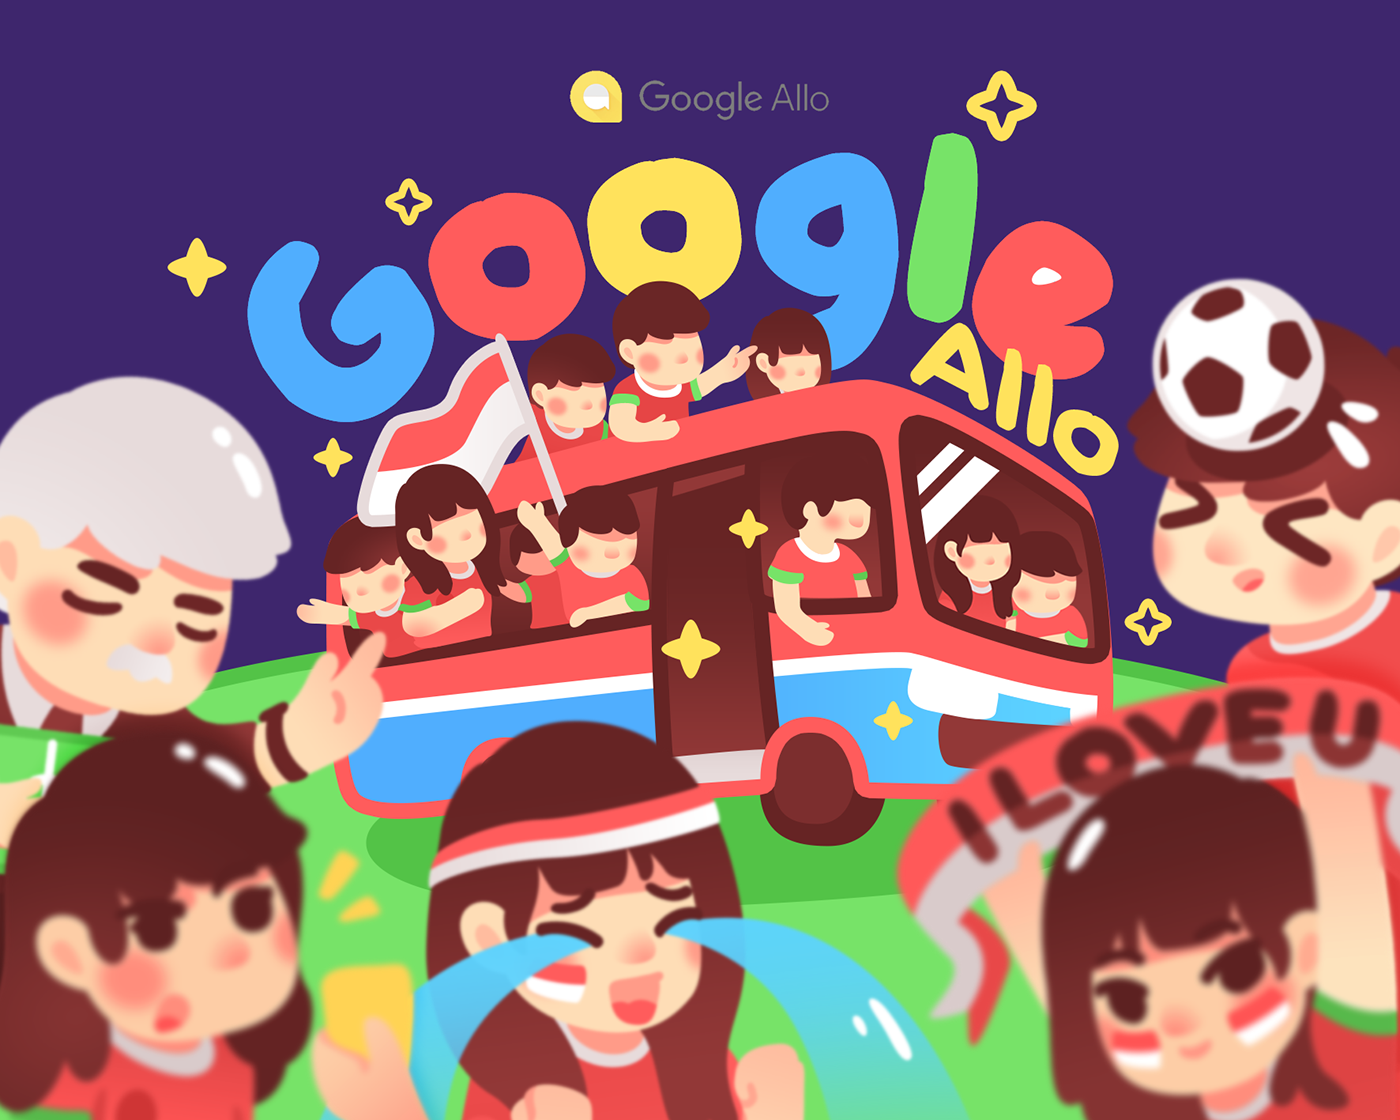 google googleallo Allo indonesia soccer sepak bola sticker vector cute children